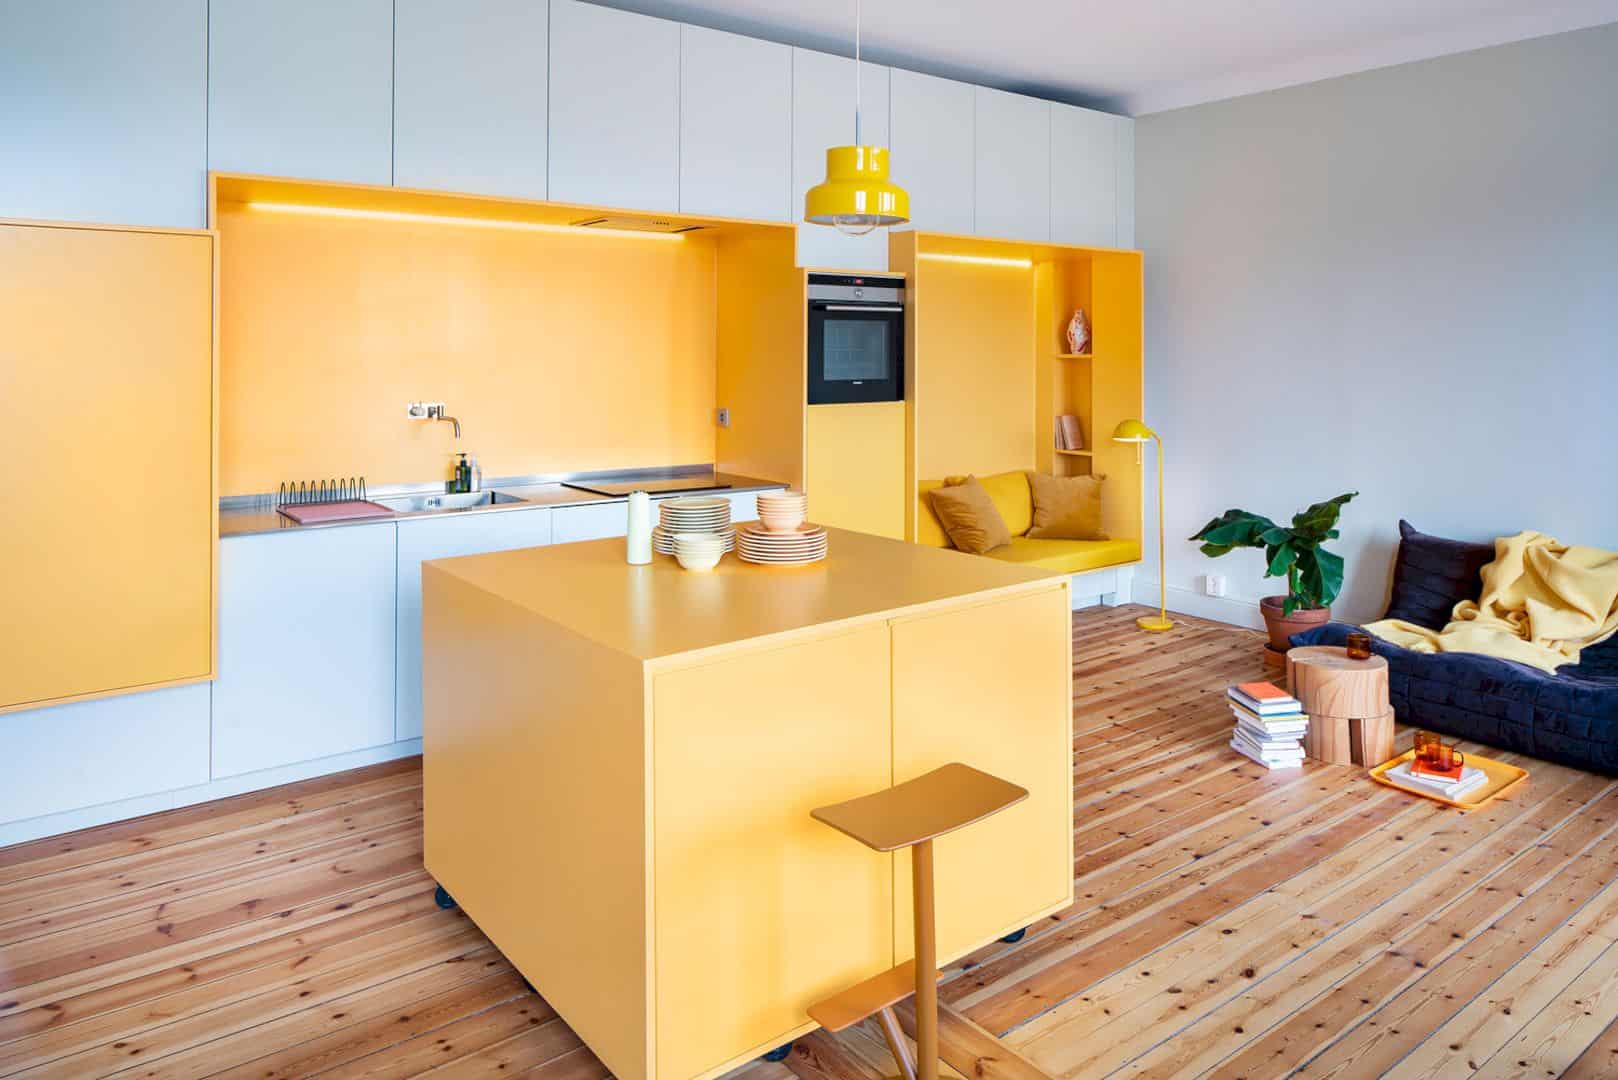 Orange Kitchen Design